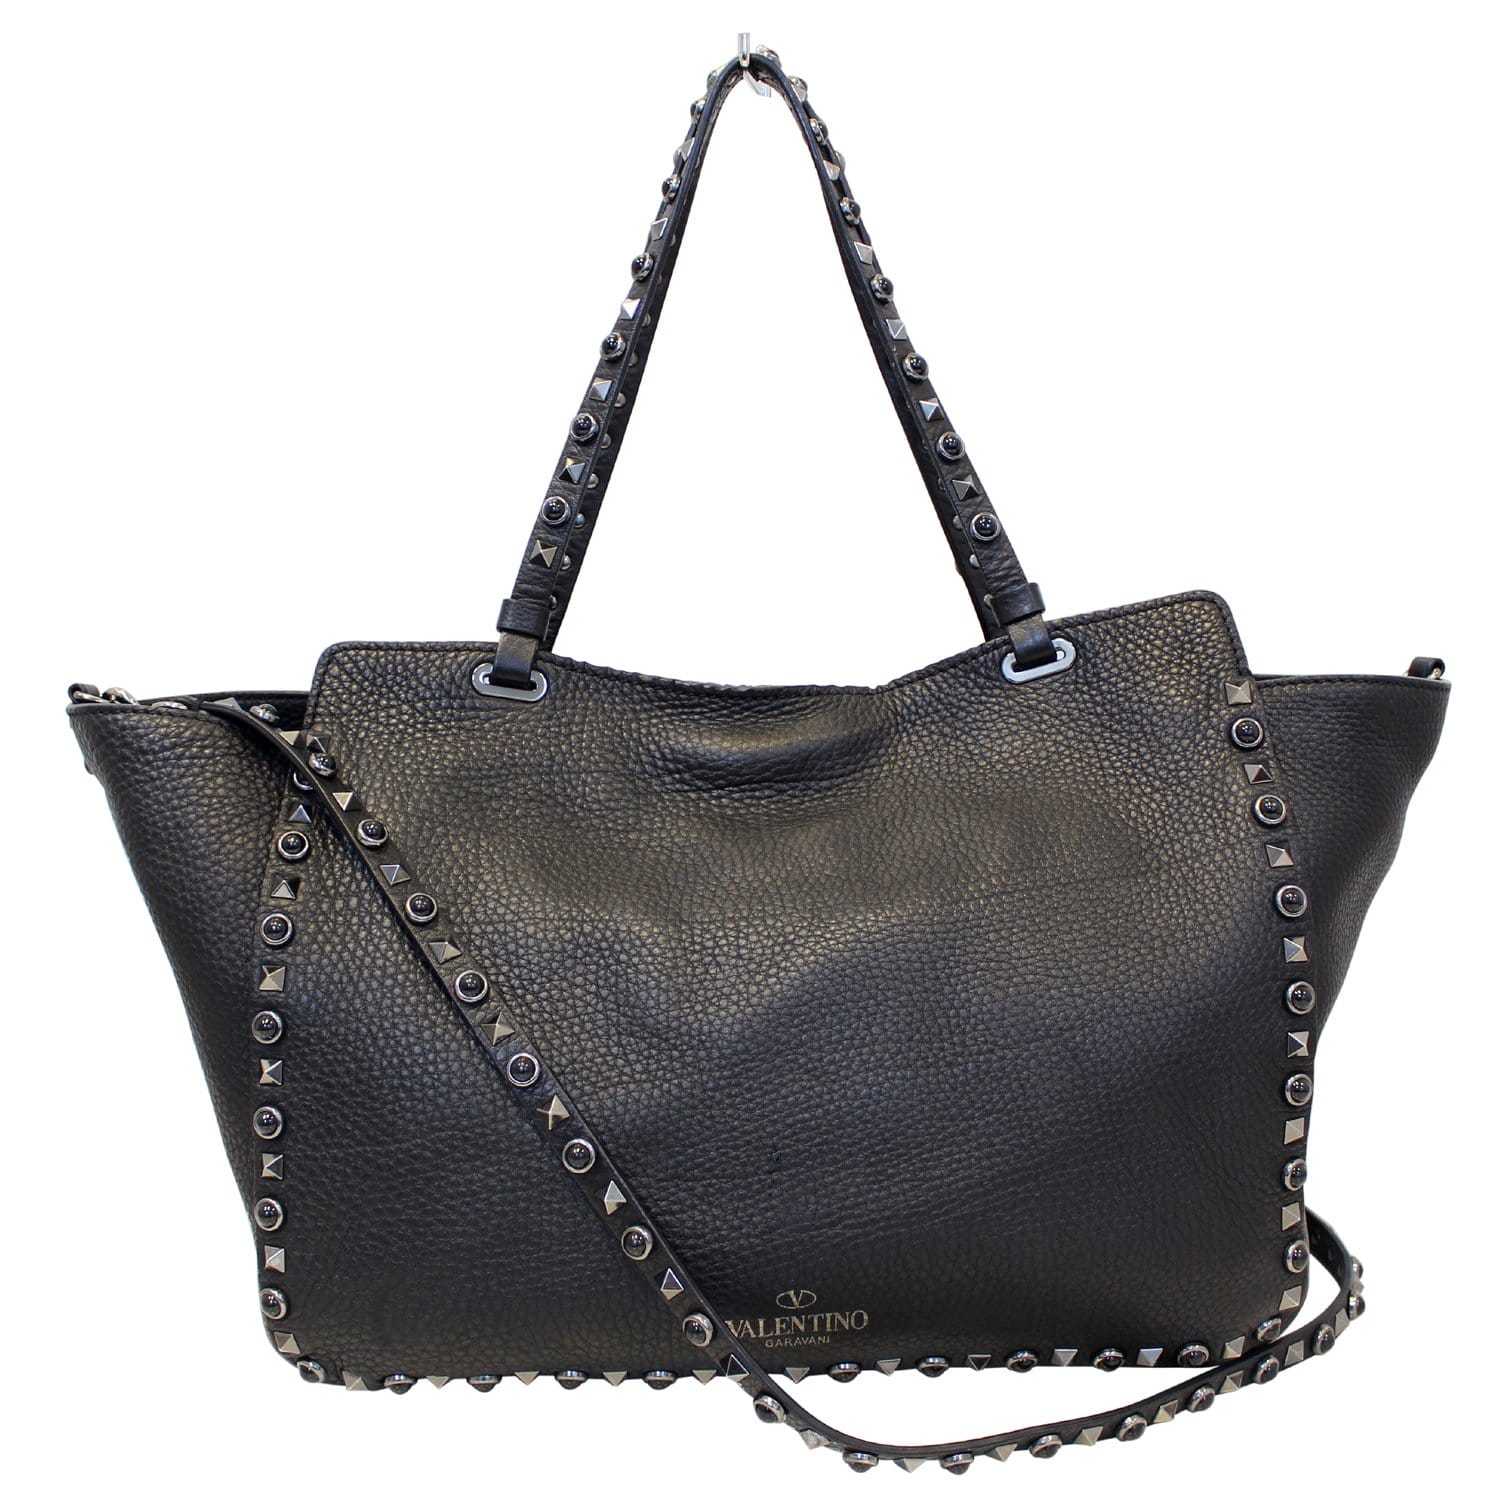 Piping århundrede fange Valentino Rockstud Noir Black Leather Medium Tote Shoulder Bag-US